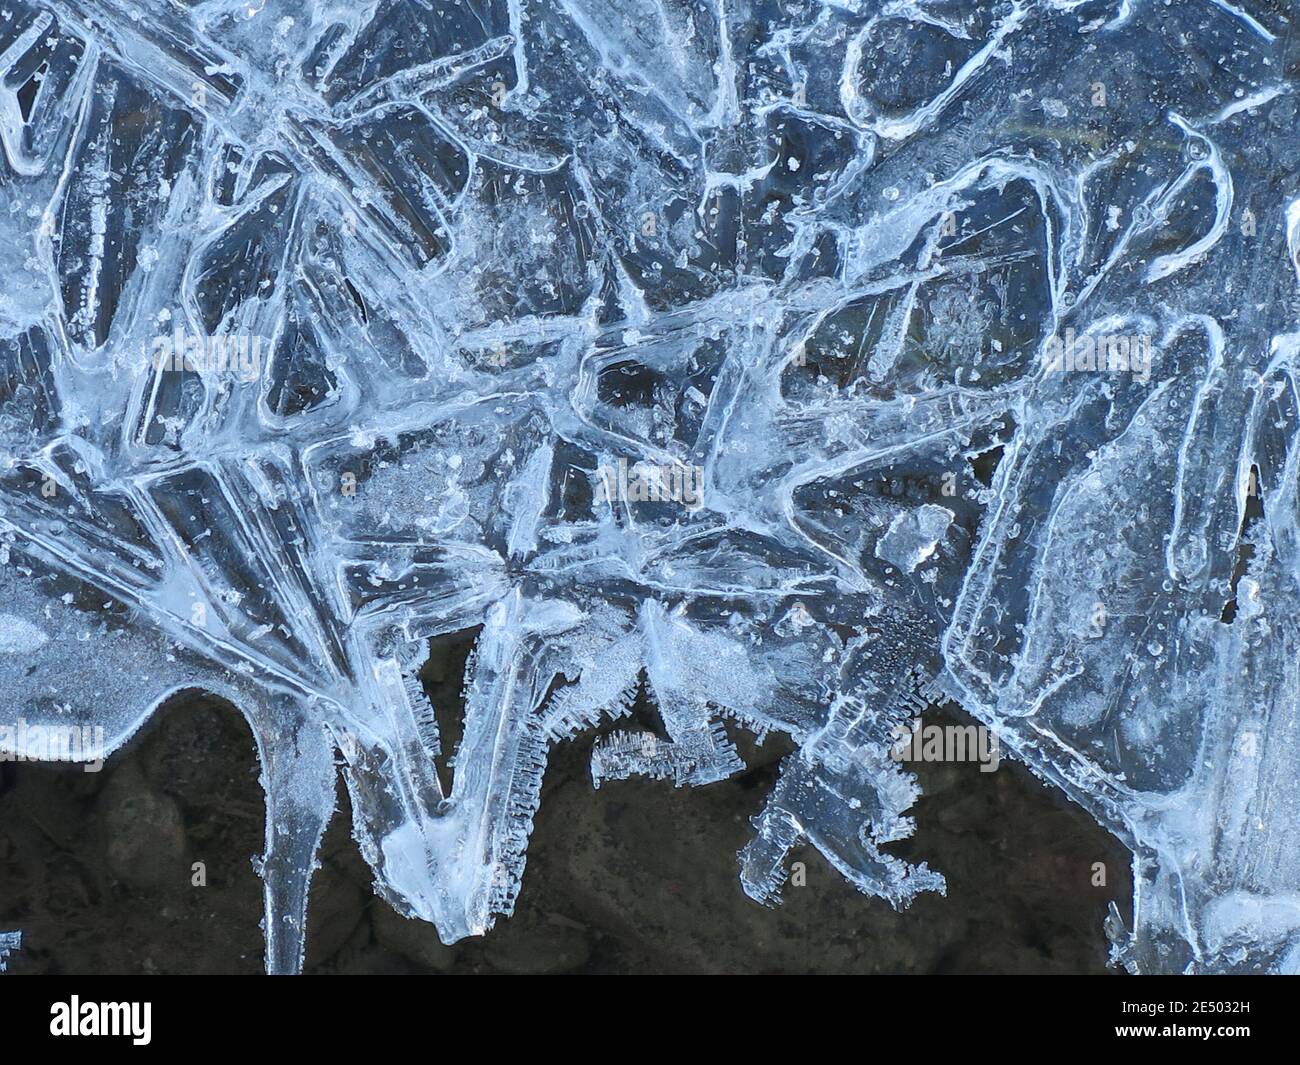 Photo abstraite de cristaux de glace glacés dans de belles formes formées le long de bassins d'eau sombre profonde. Banque D'Images